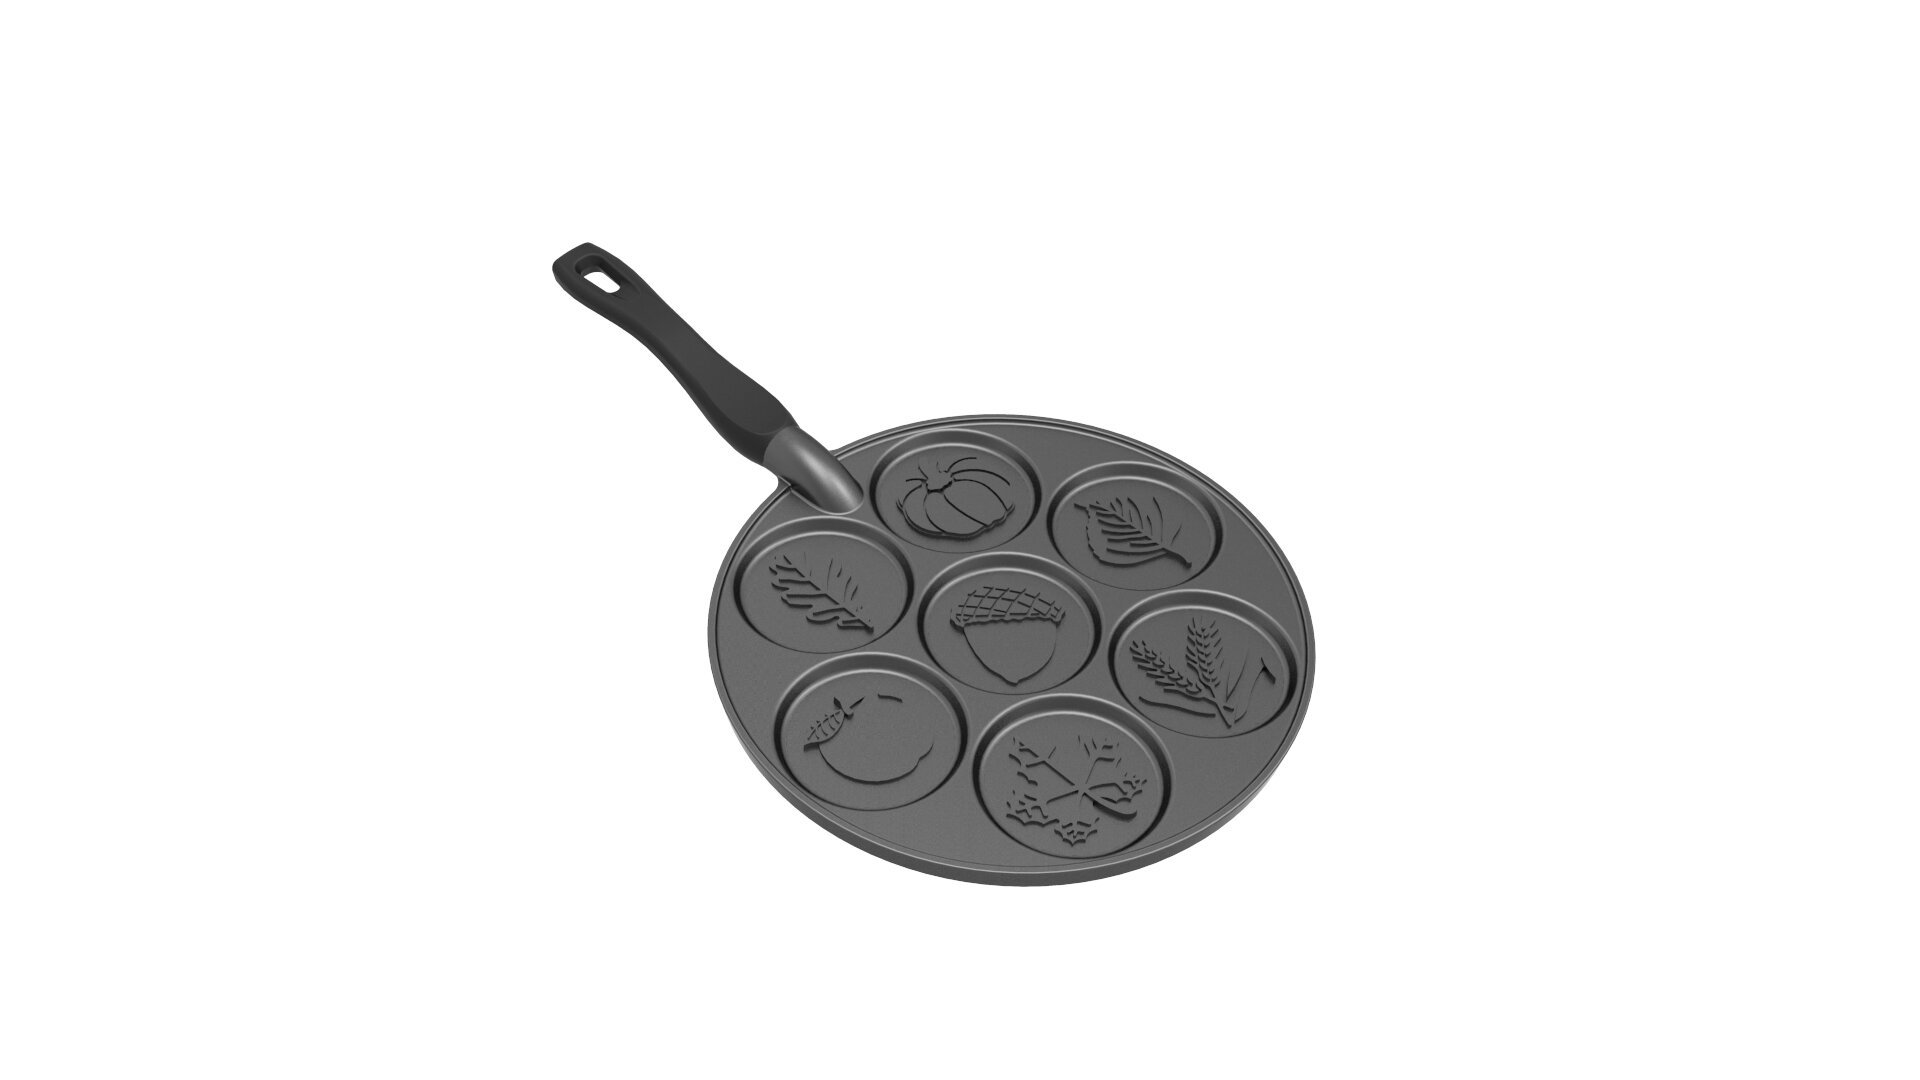 Black Nordic Ware Autumn Leaves Pancake Pan